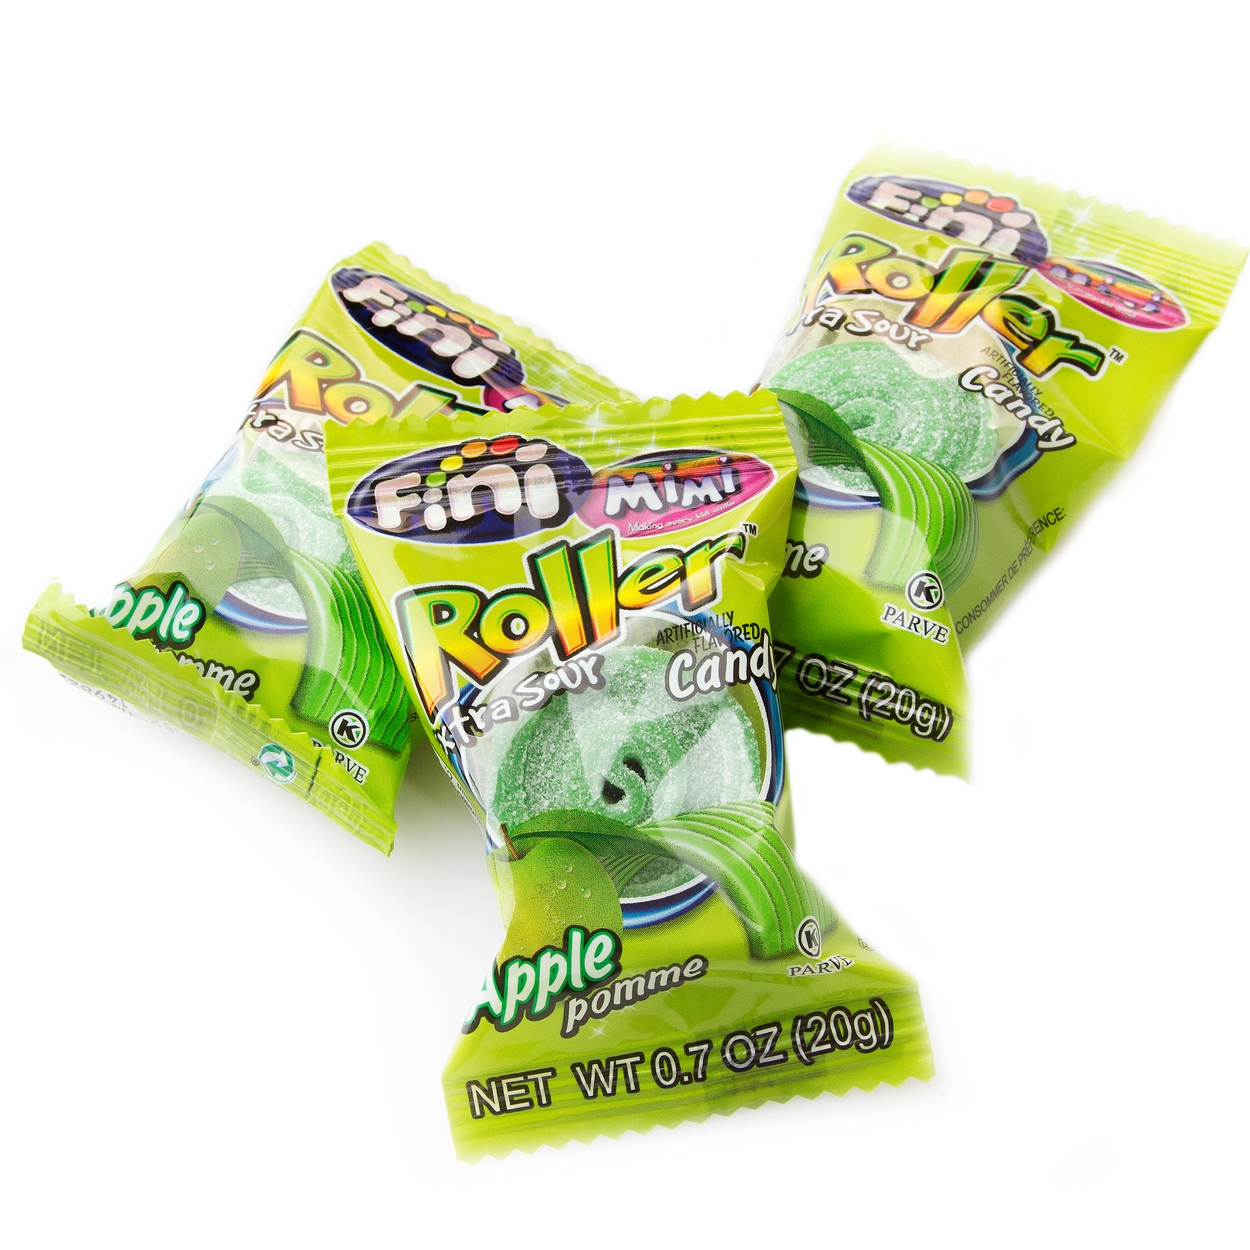 Froot Loops Gummies Candy 7oz Bag